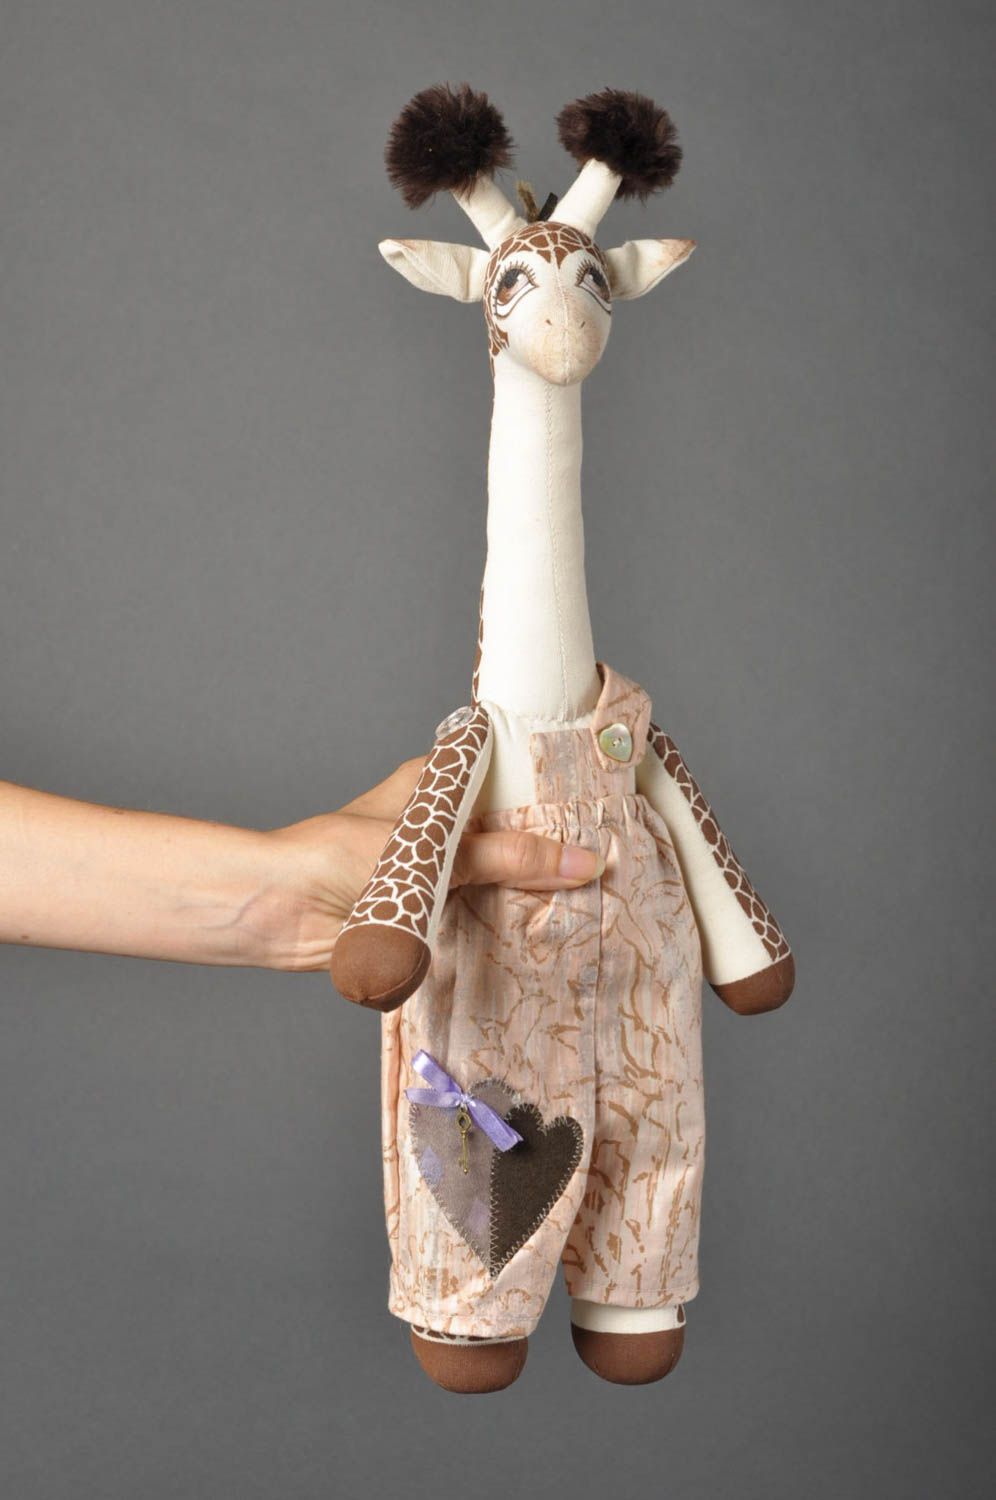 Игрушка жираф ручной работы детская игрушка расписанная акрилом мягкая игрушка фото 3